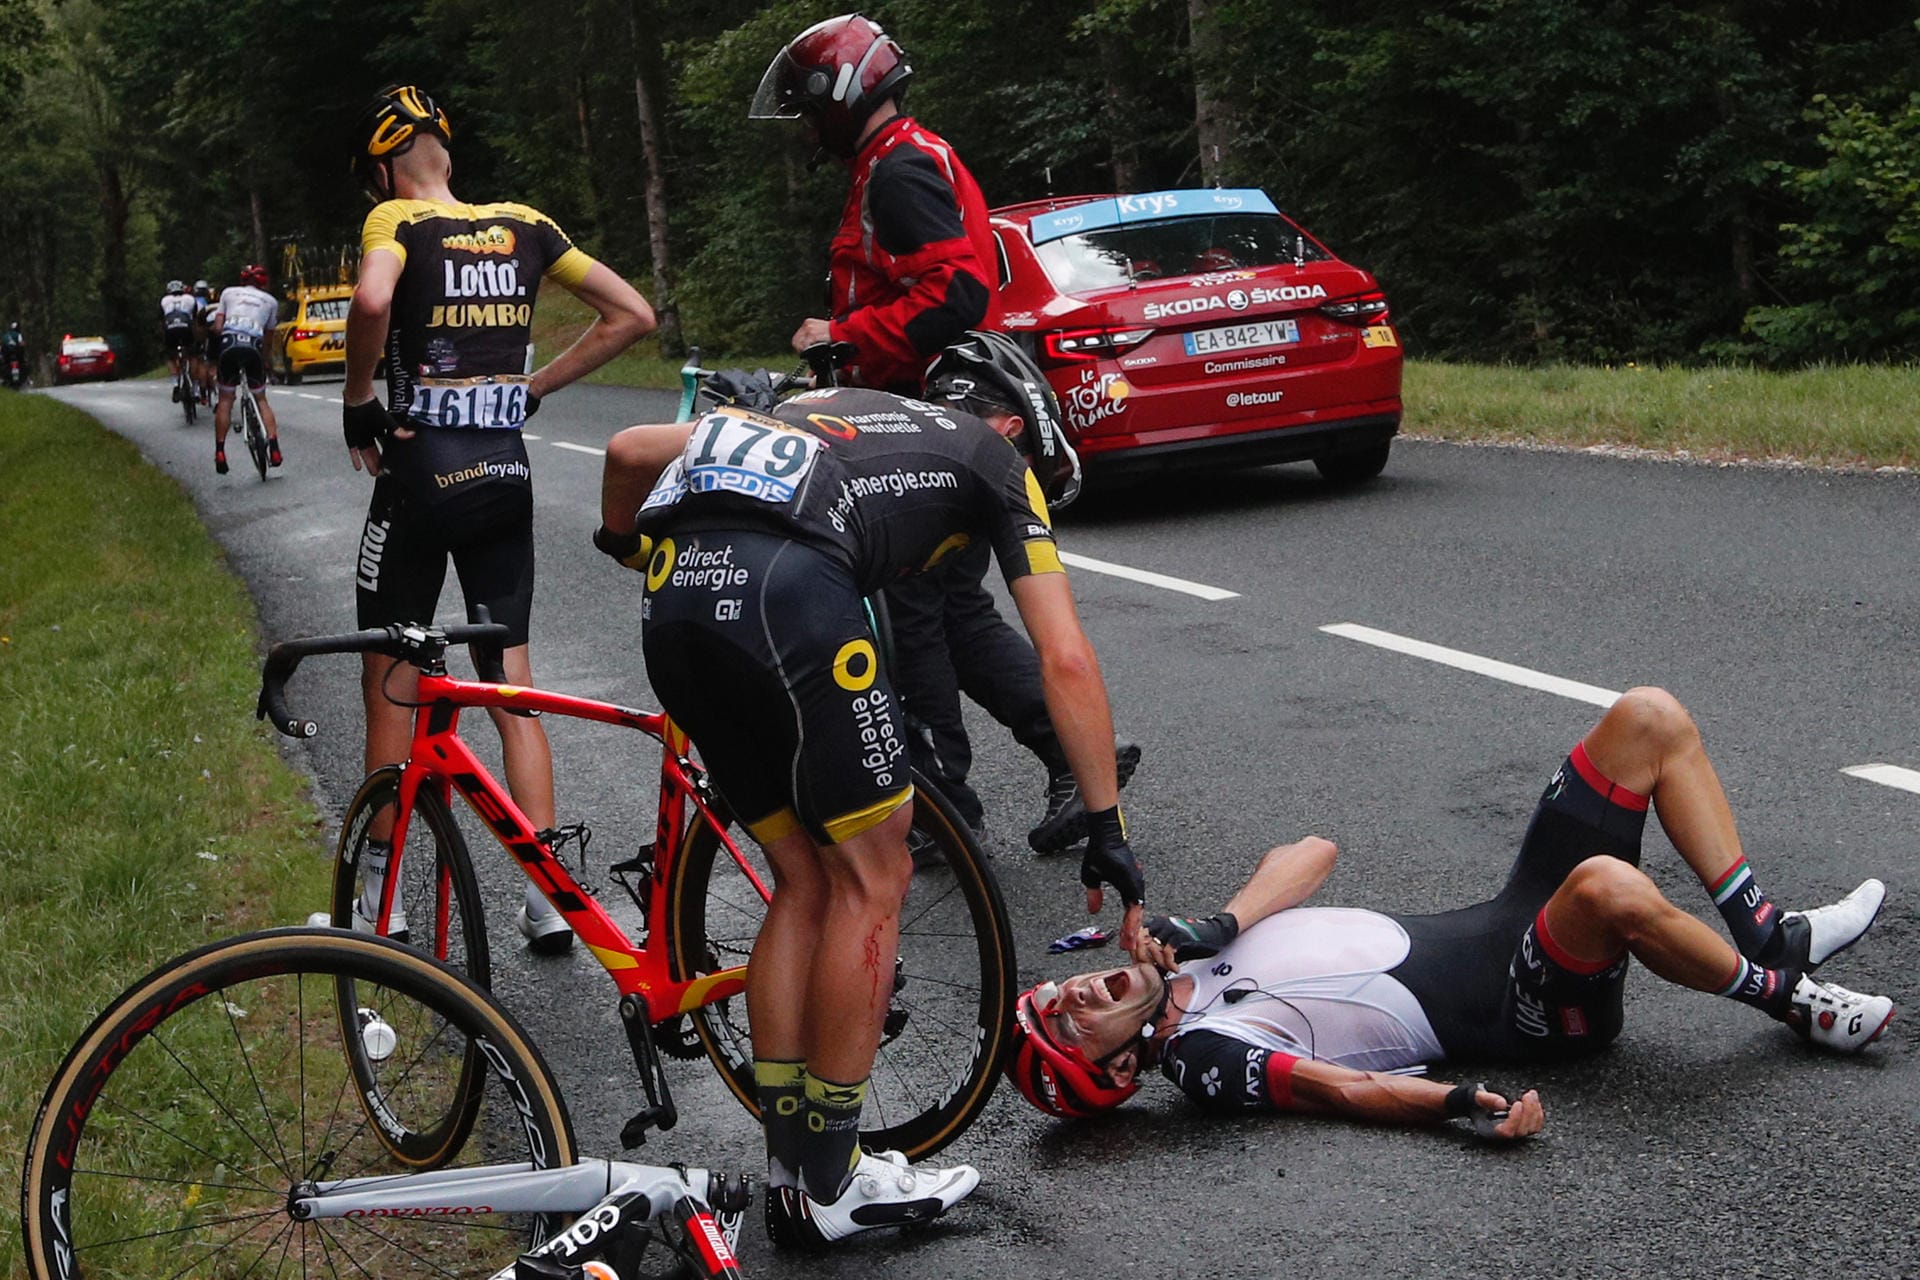 Crash auf der 9. Etappe: Bei Kilometer 174 knallen Robert Gesink (l.) und Manuele Mori (r.) zusammen. Angelo Tulik kümmert sich um den verletzten Italiener.